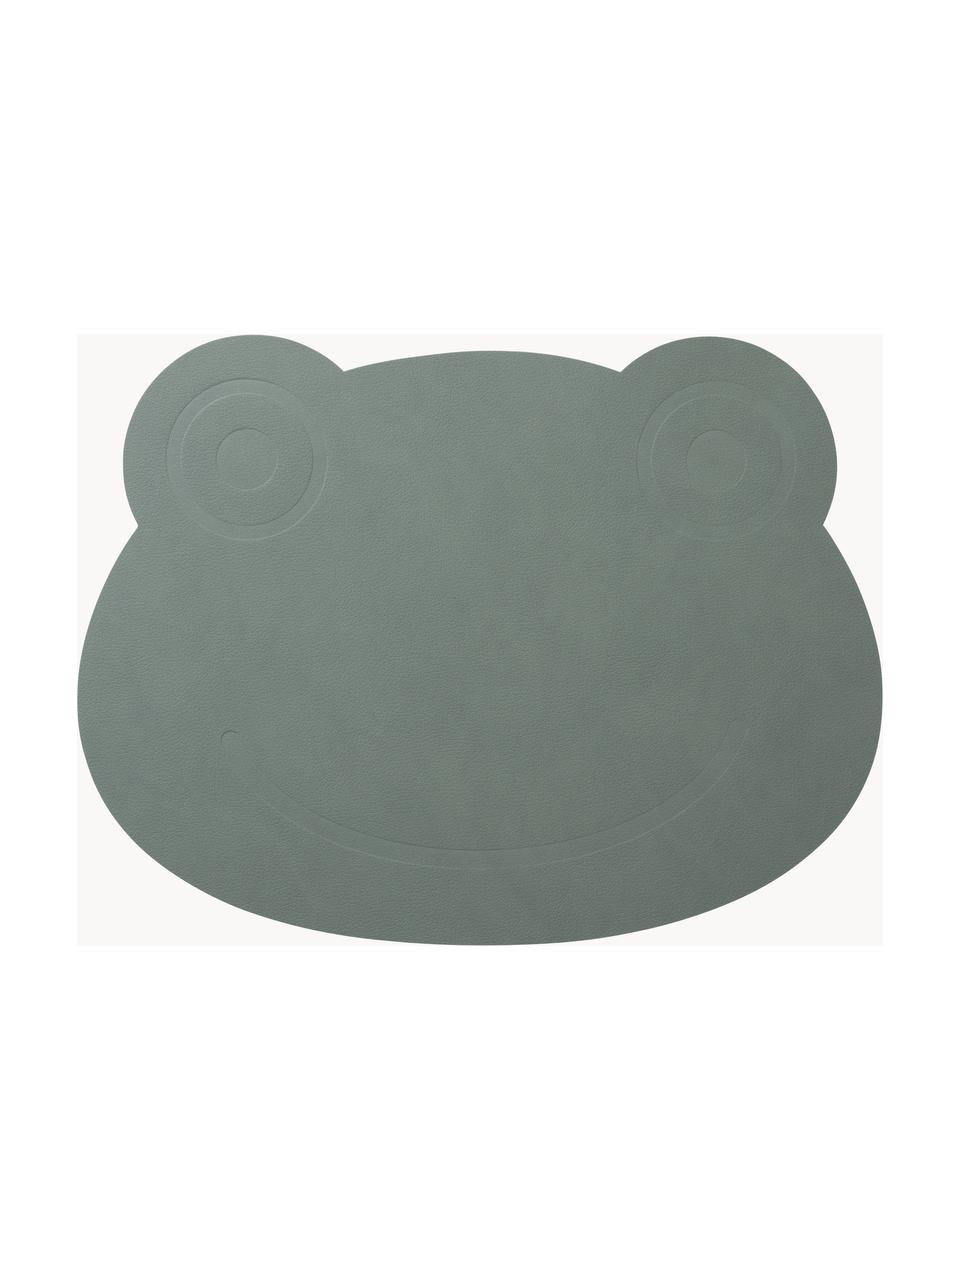 Leren placemat Frog, Kunstleer, rubber, Saliegroen, B 38 x L 28 cm